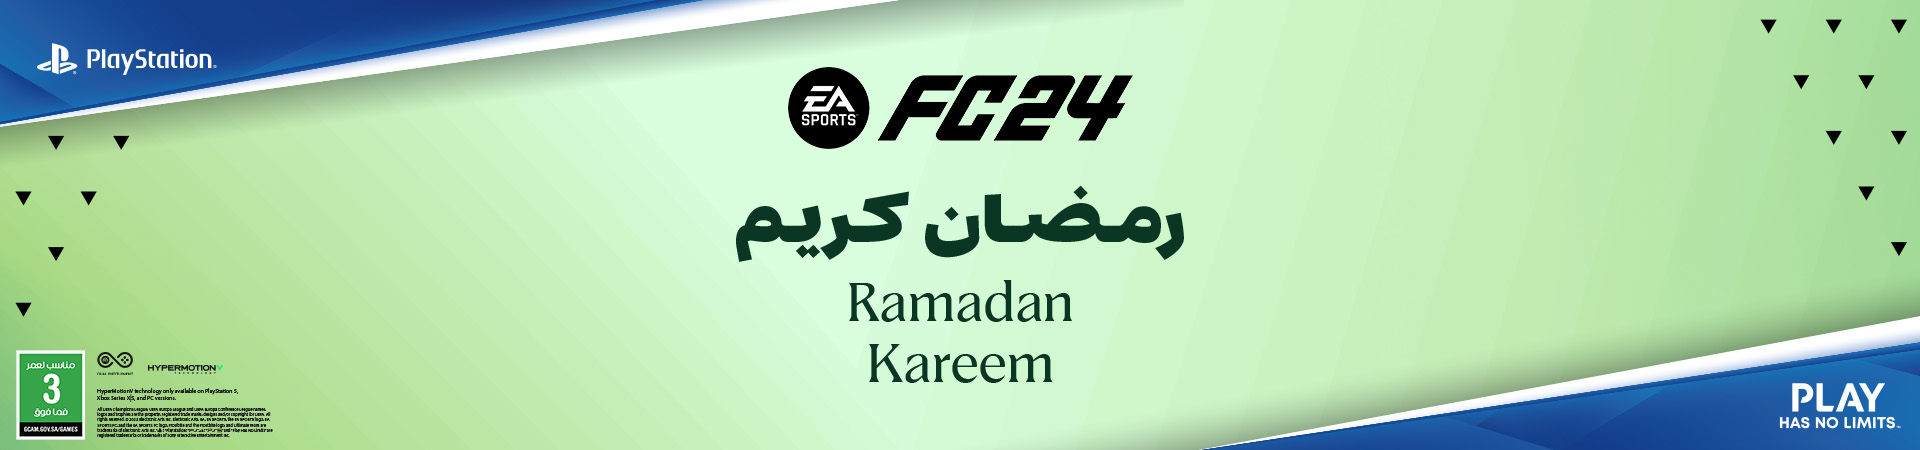 Ramadan Kareem FC24